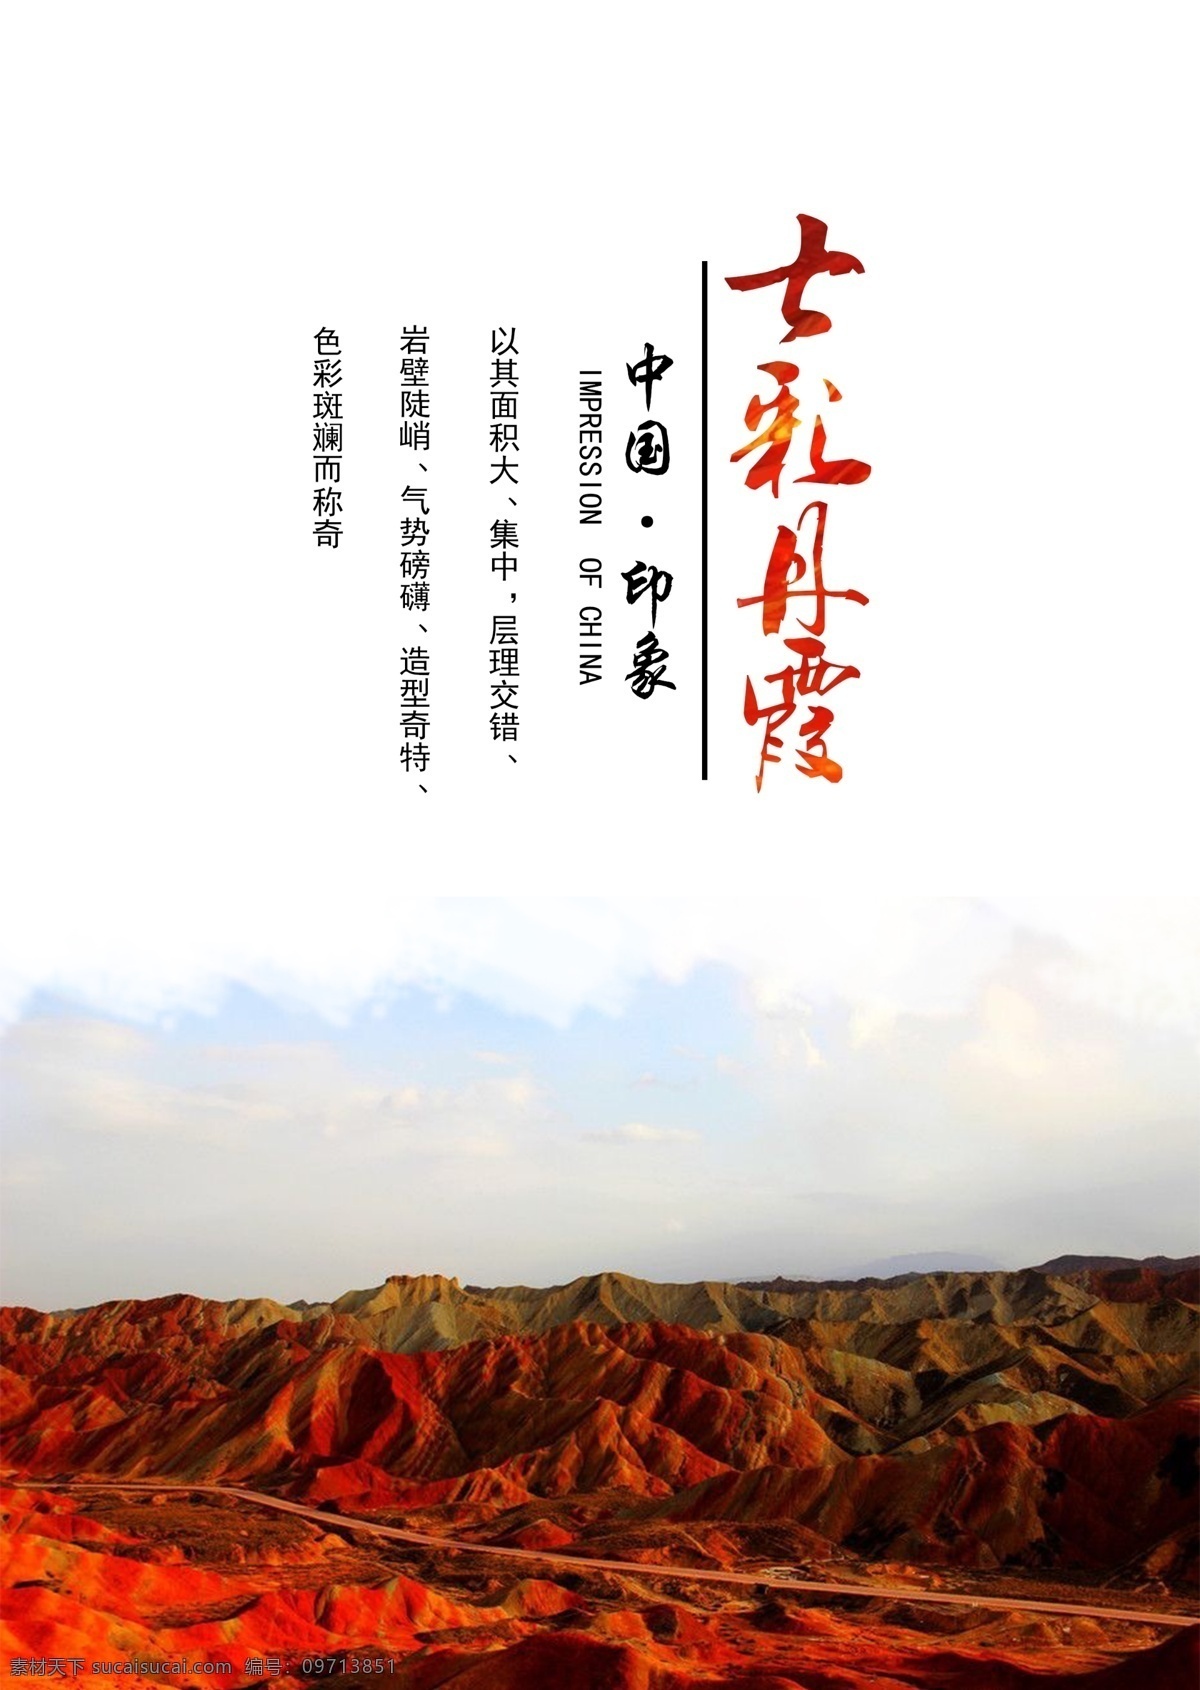 中国 印象 七彩 丹霞 海报 旅游 风景 西北 中国印象